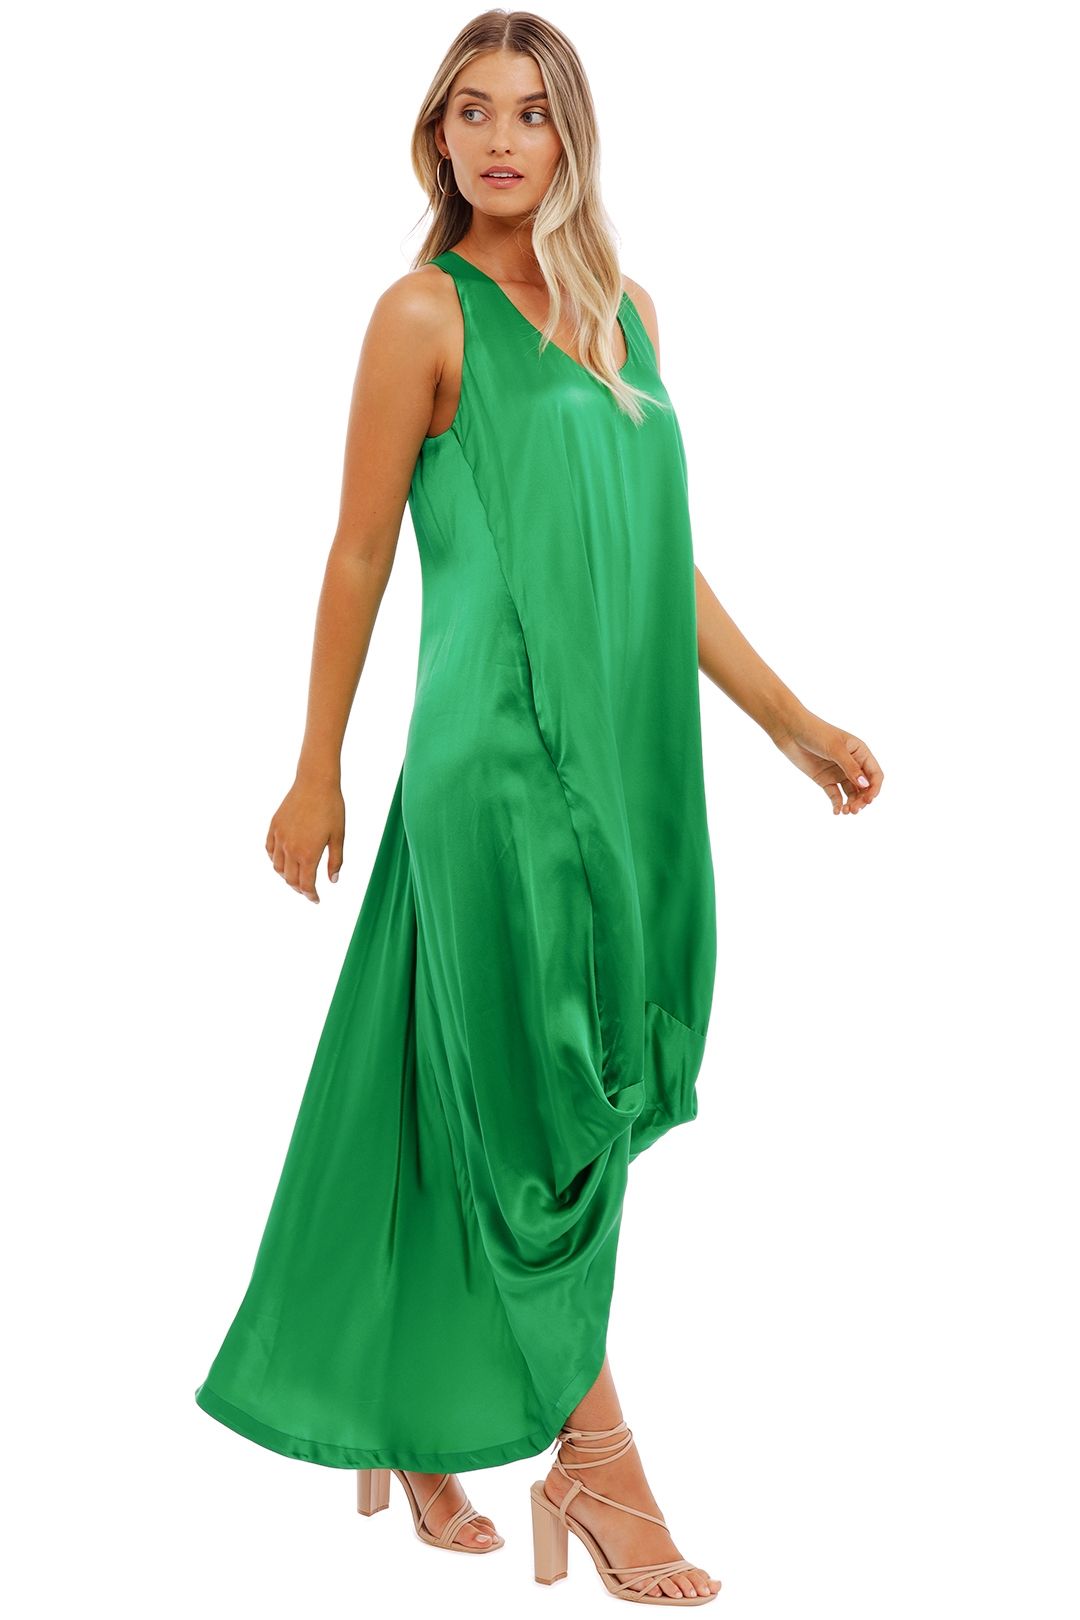 KITX Float Dress Green satin